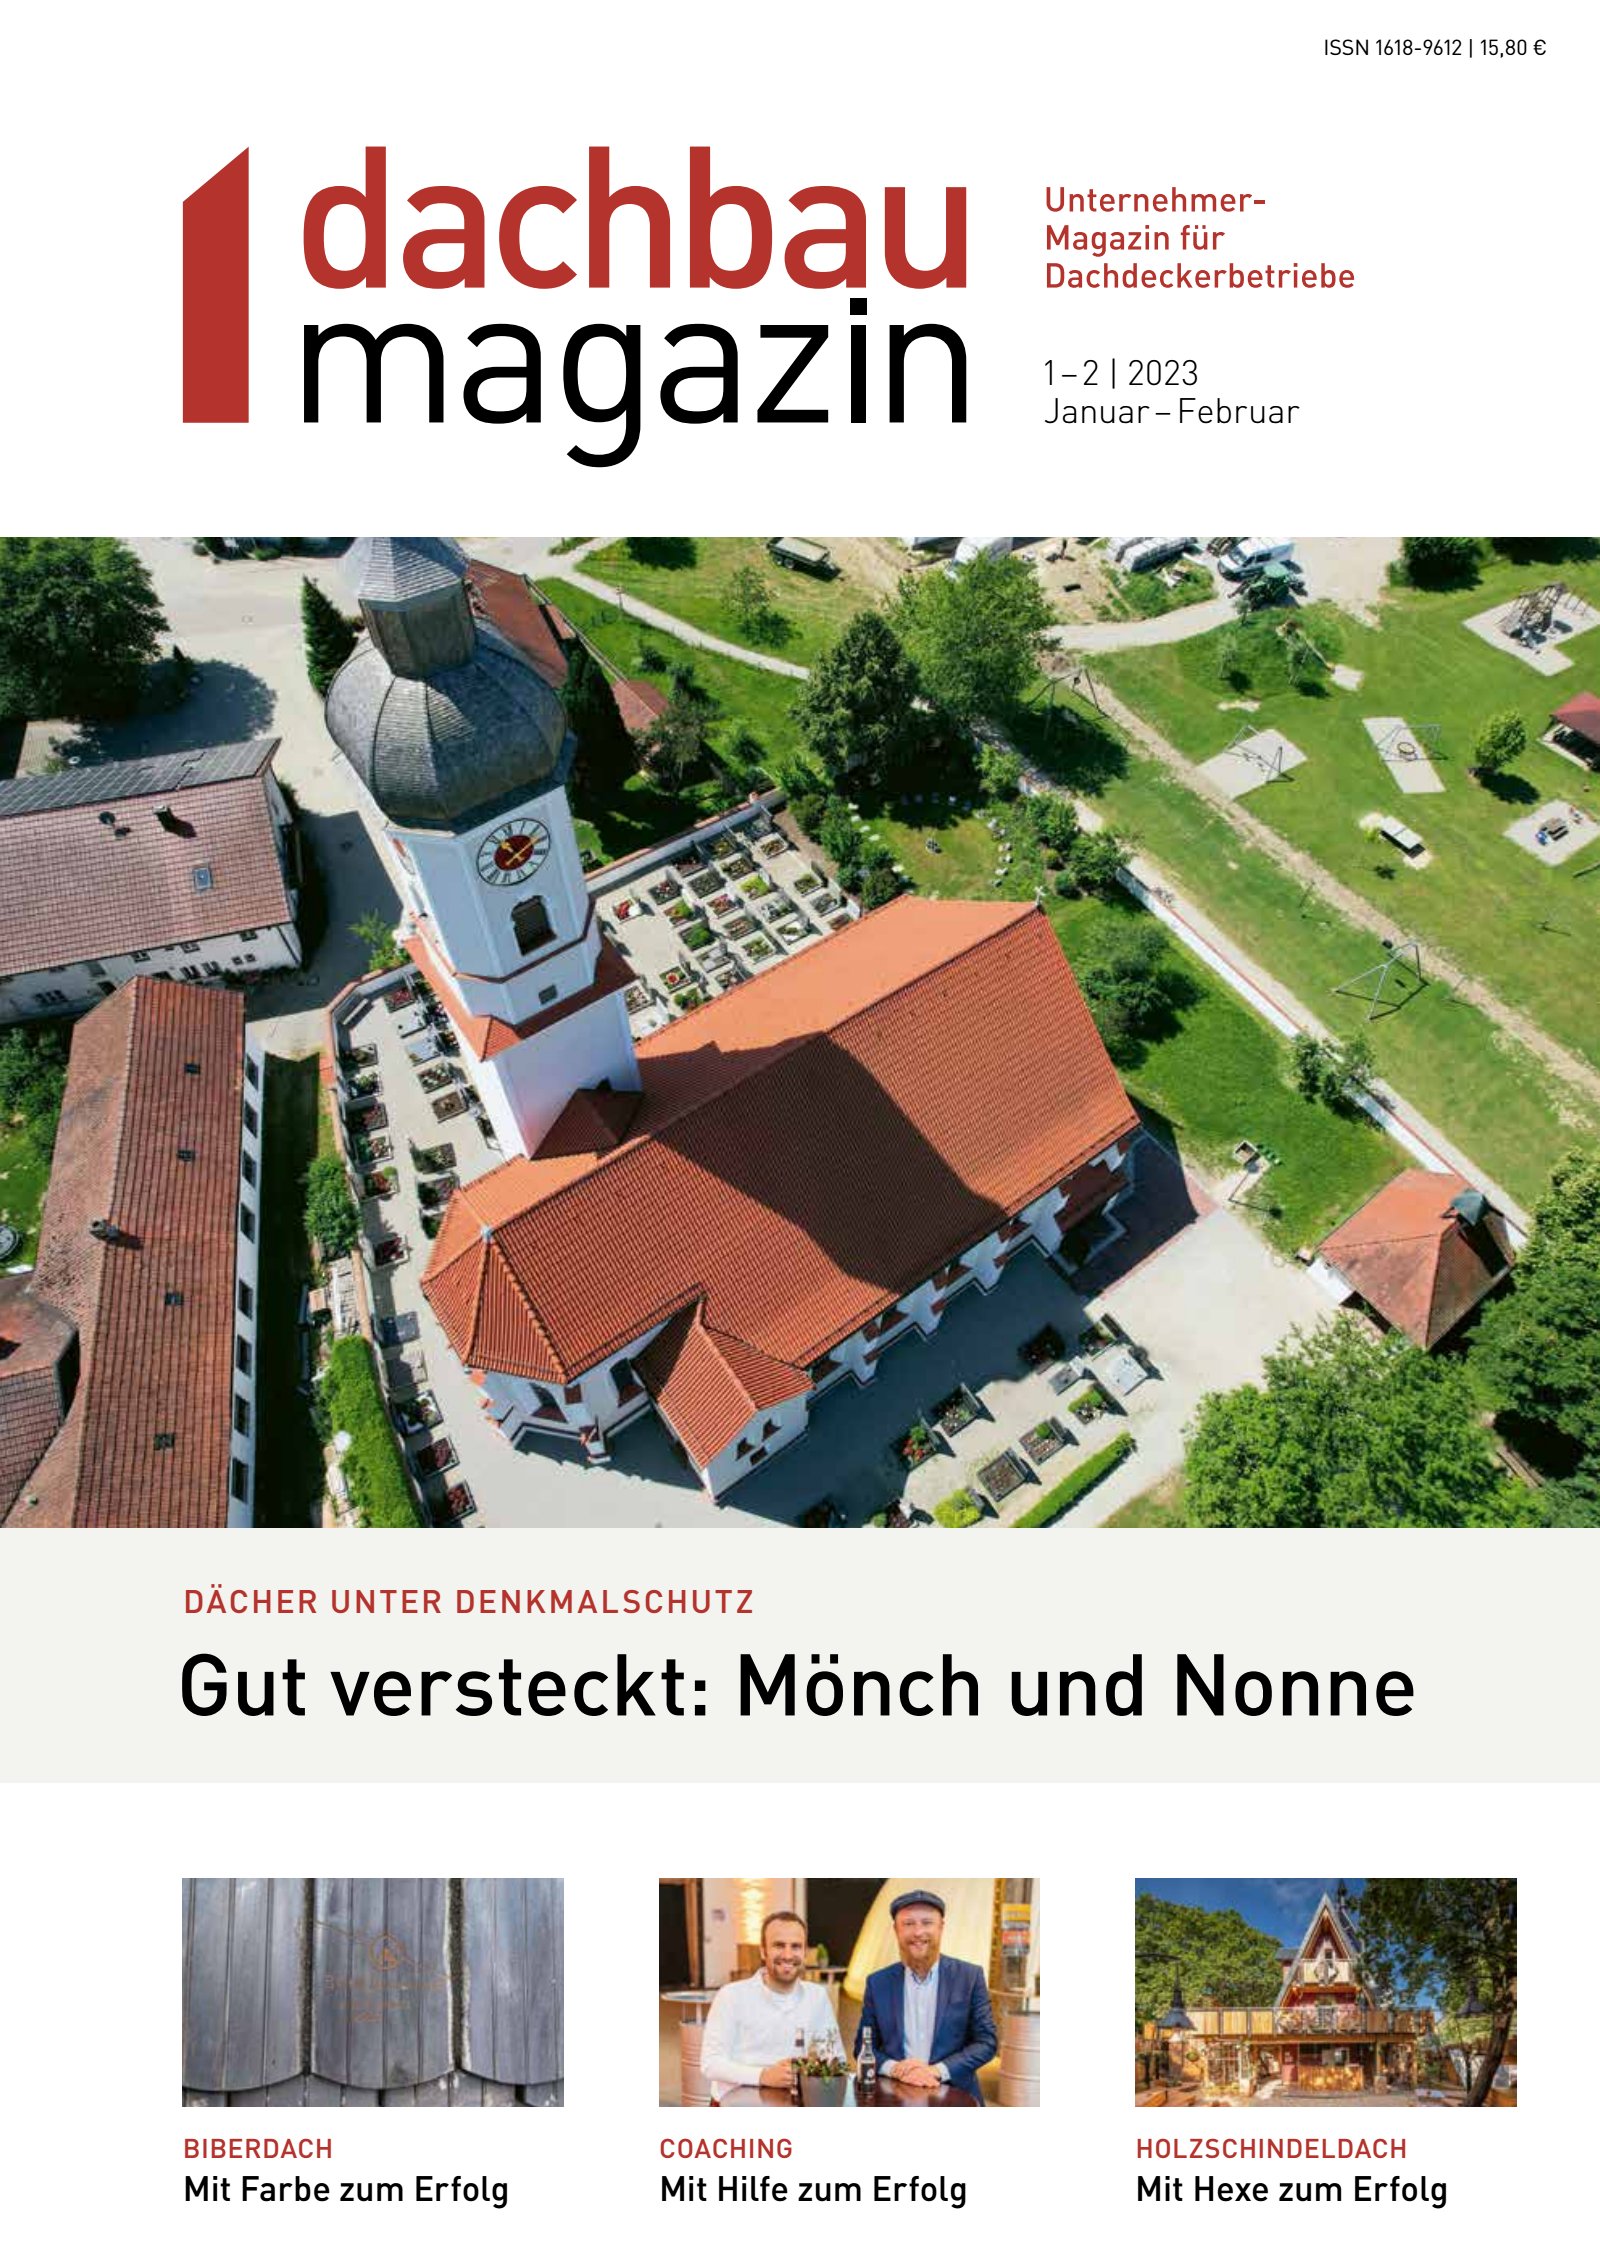 dachbau magazin 1+2/2023 Digital